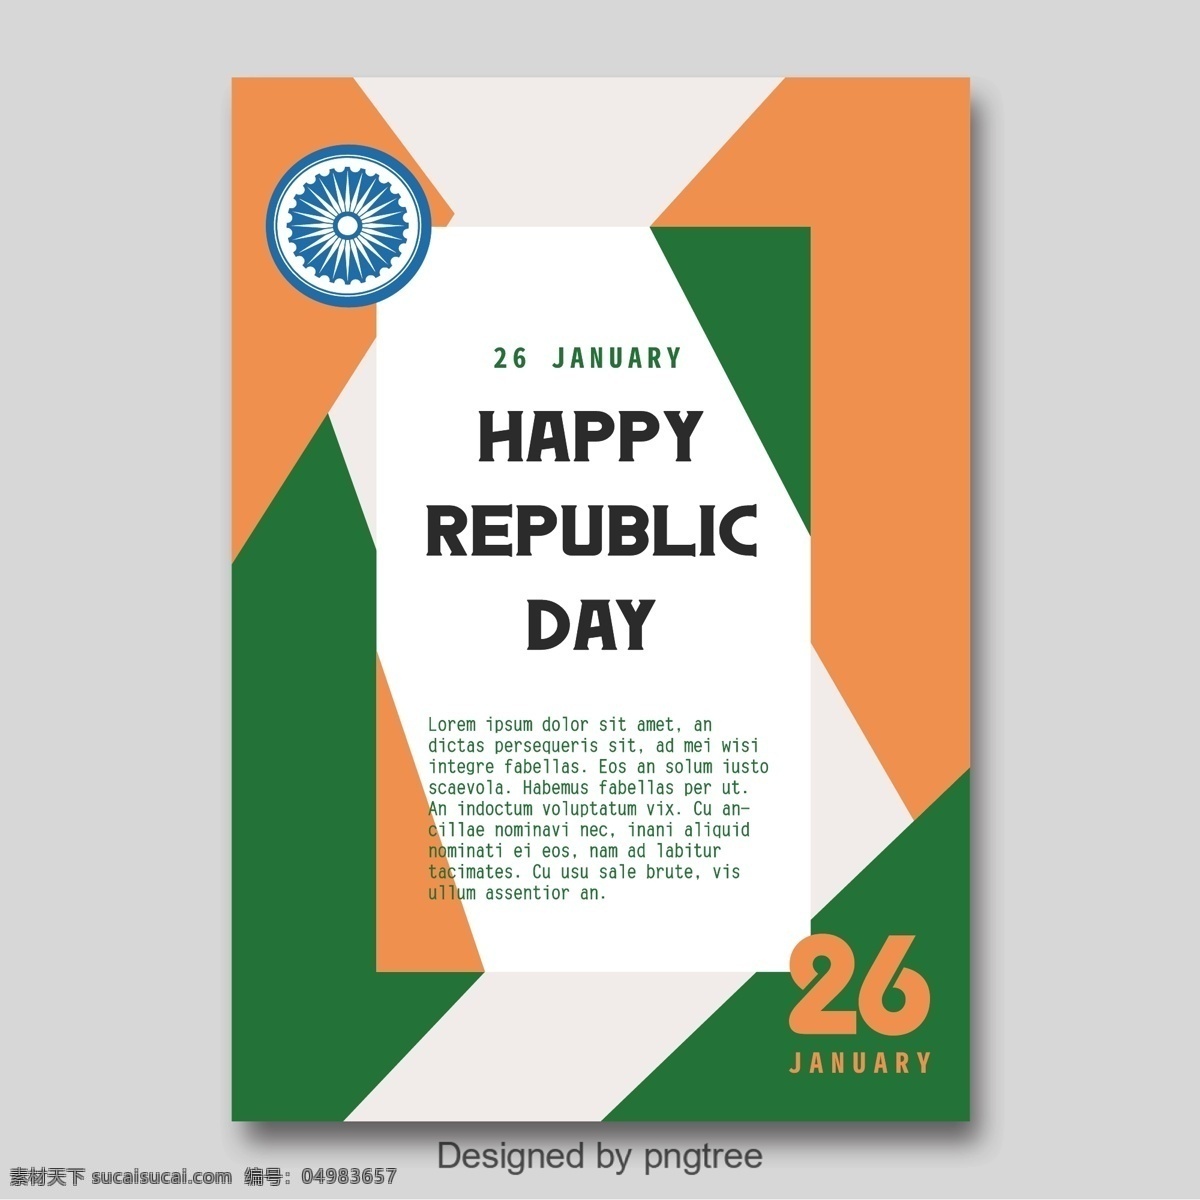 印度 共和 日 宣传海报 简约 风 海报 印度共和日 车轮旗 简洁 极简海报 橙色 绿色